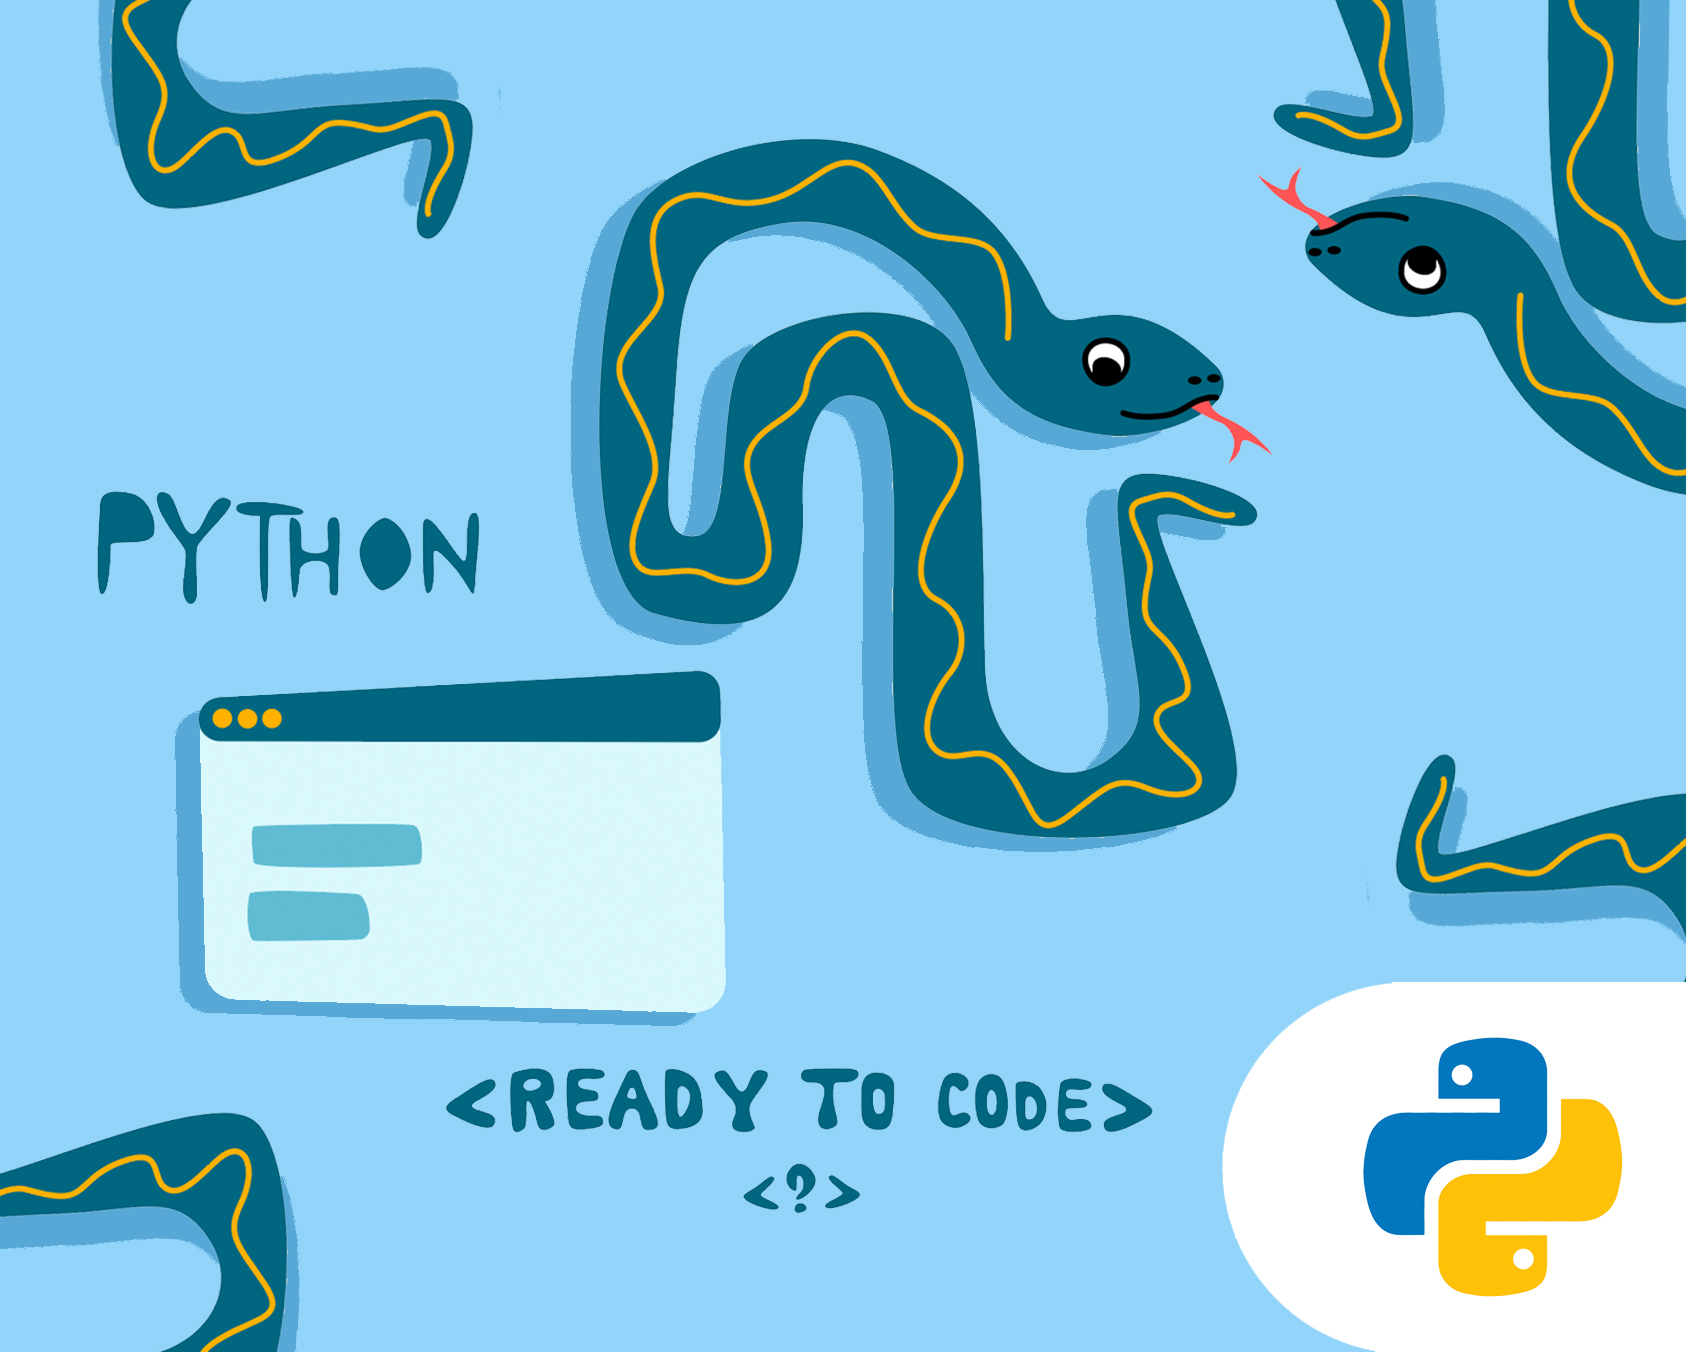 Besplatni info čas - Python workshops